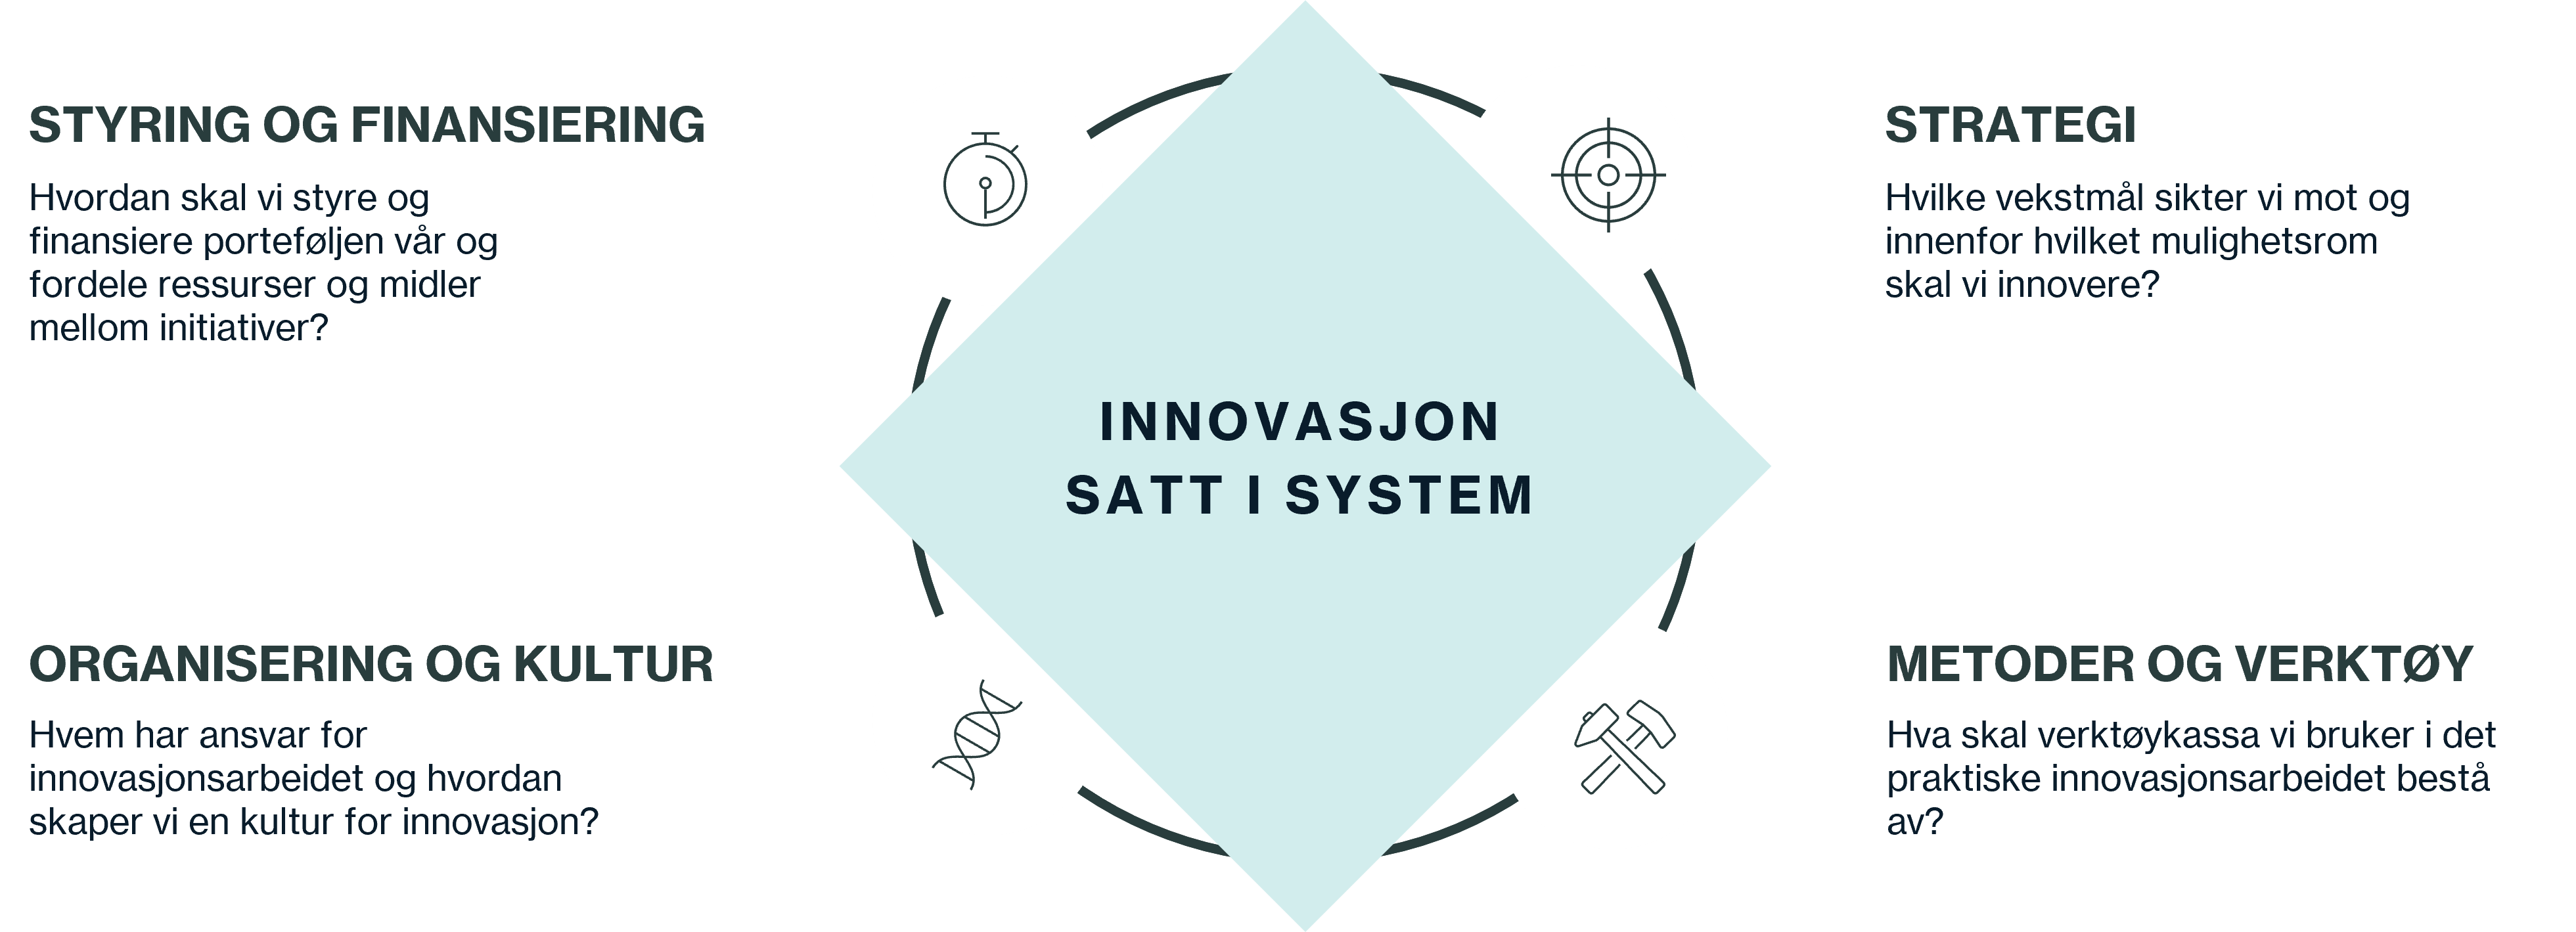 Bilde av de fire komponentene for å sikre et system for innovasjon.